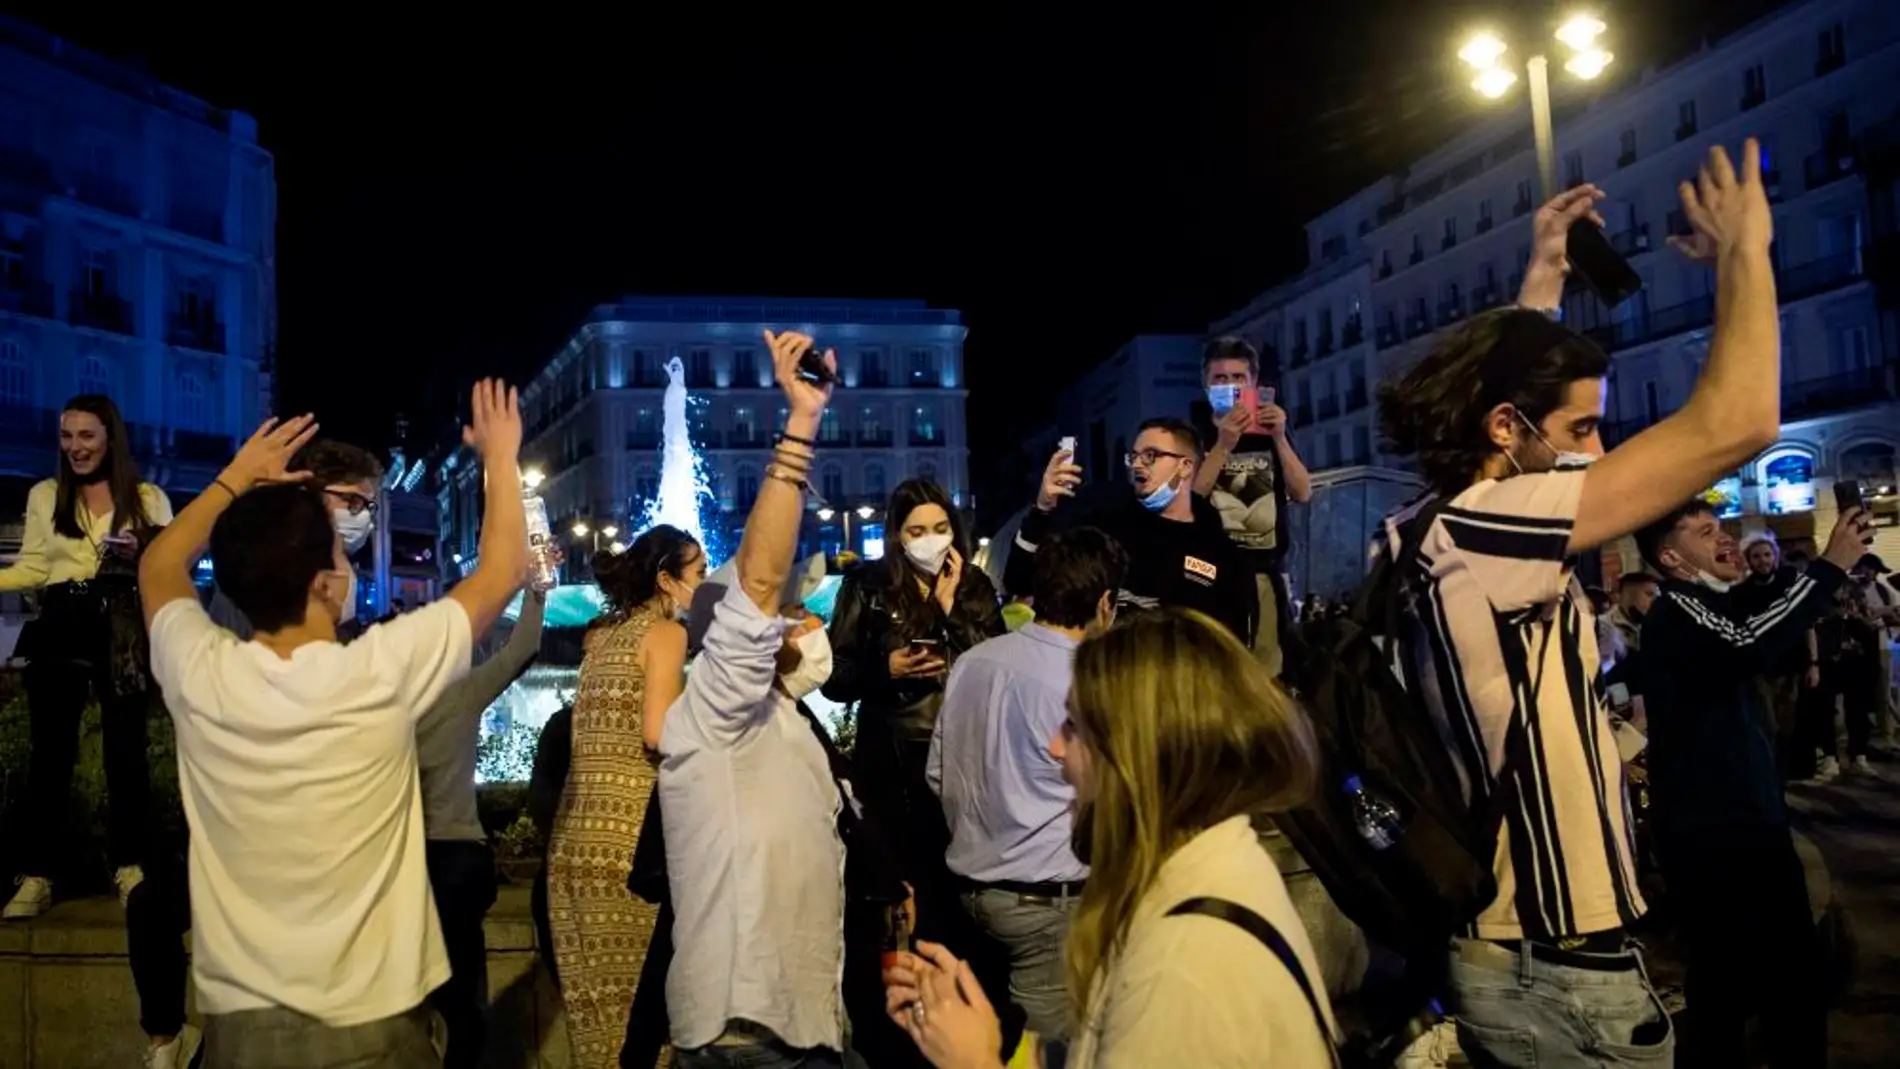 Imágenes de reuniones masivas en la Puerta del Sol de Madrid el pasado fin de semana 